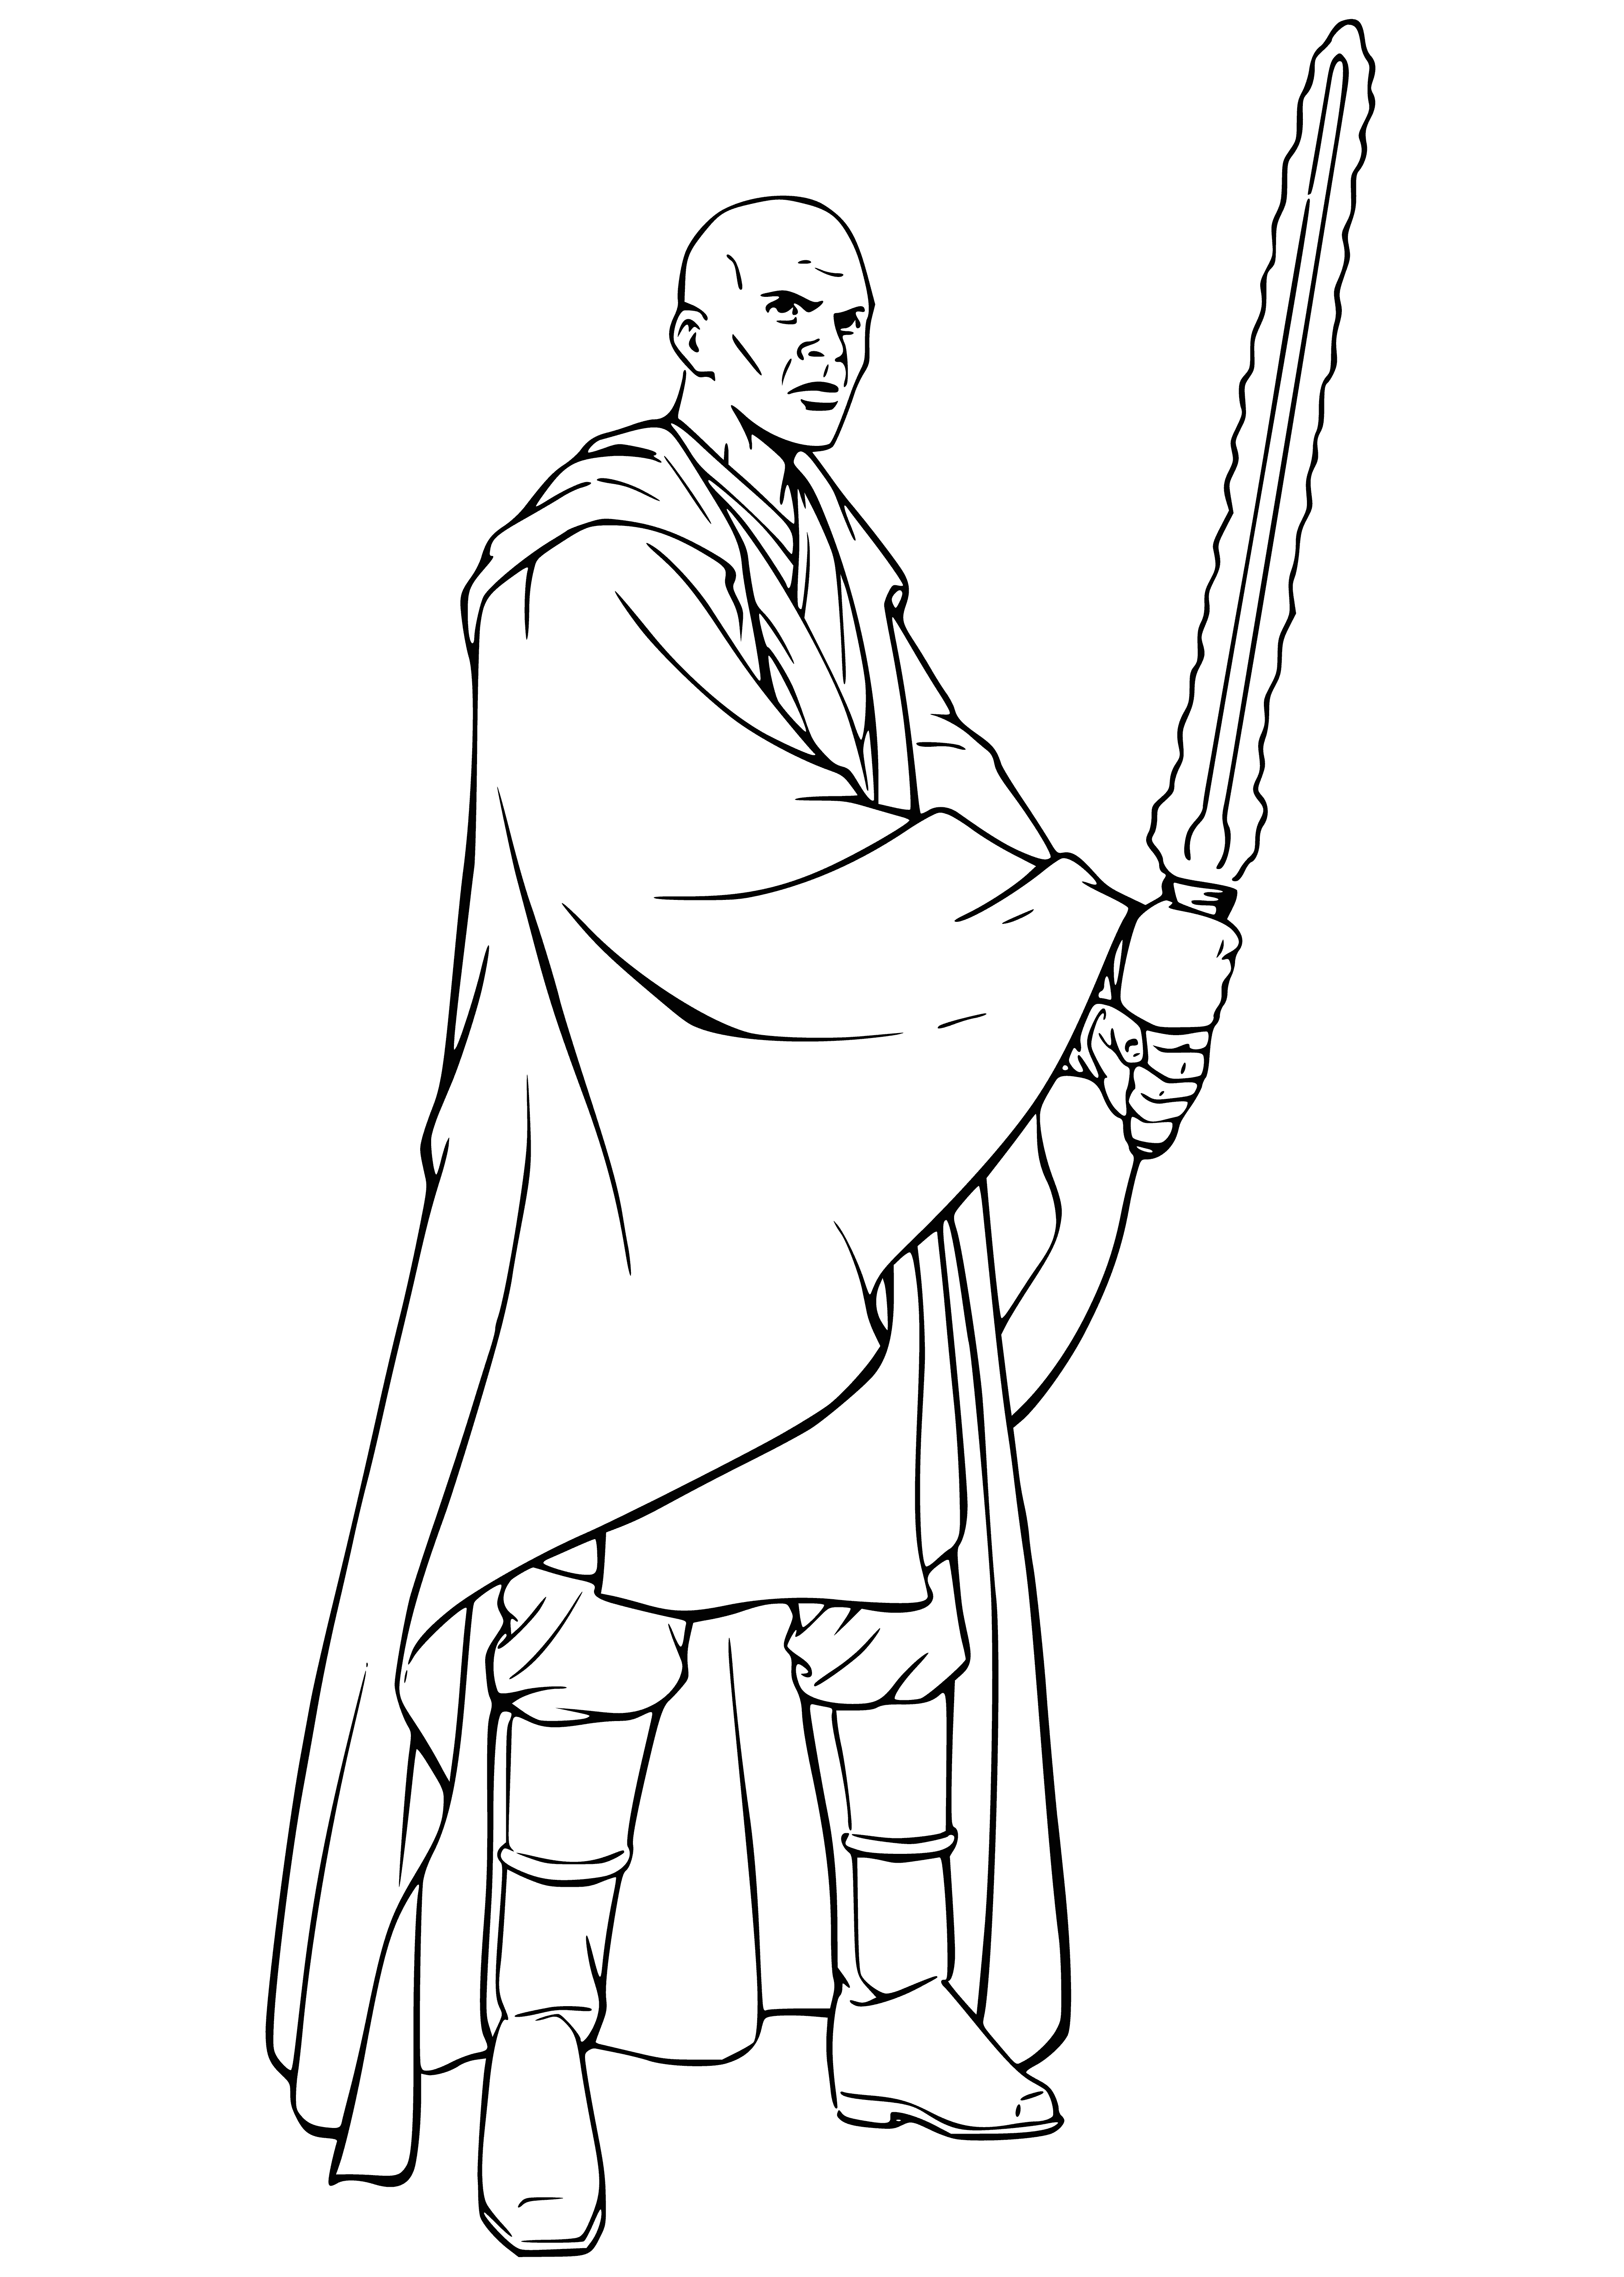 Jedi Master Mace Windu coloring page